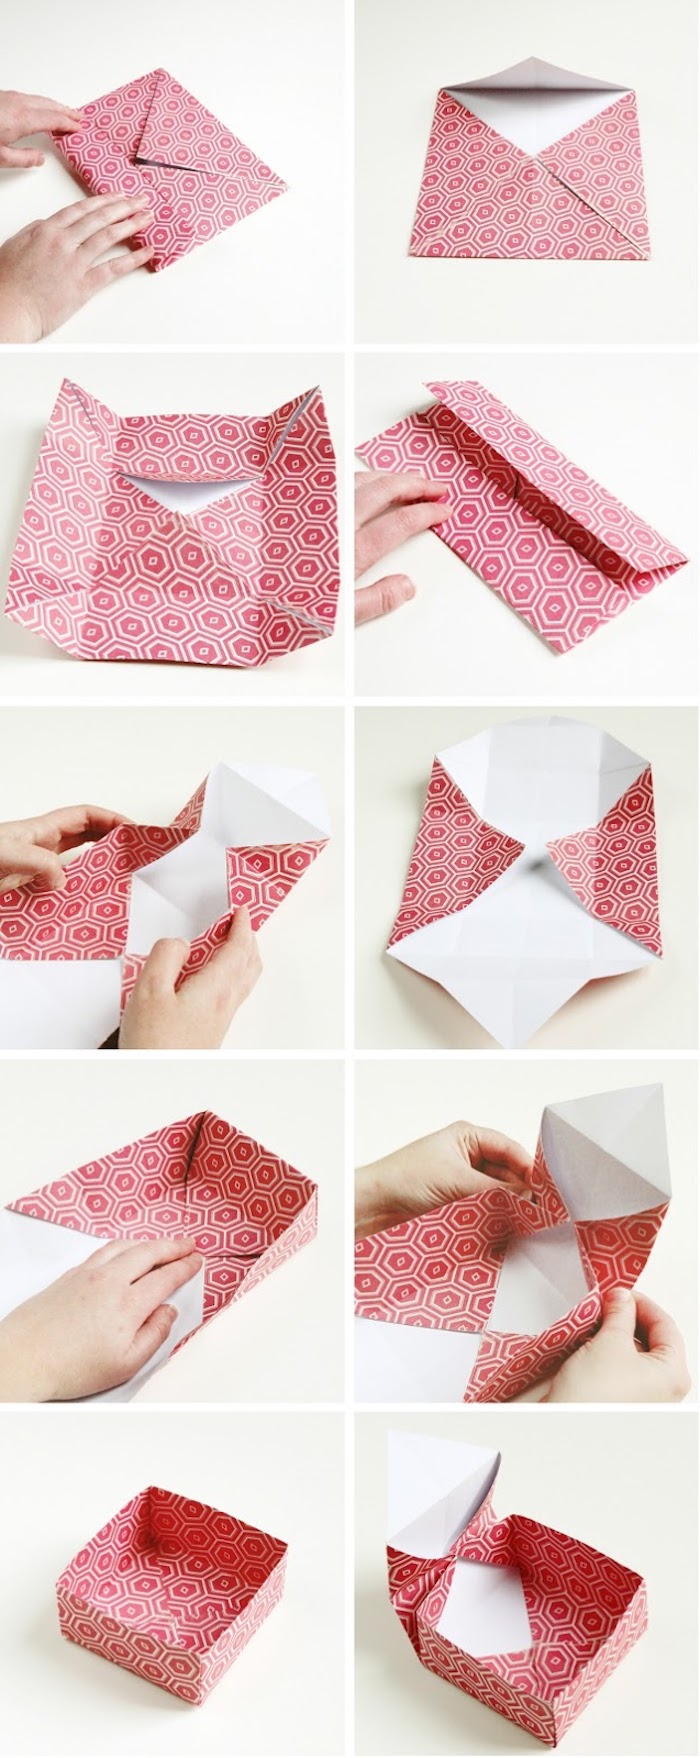 deucimeme étape du tuto paquet origami pour créer une boite en papier rouge et blanc, pliage simple, technique japonaise